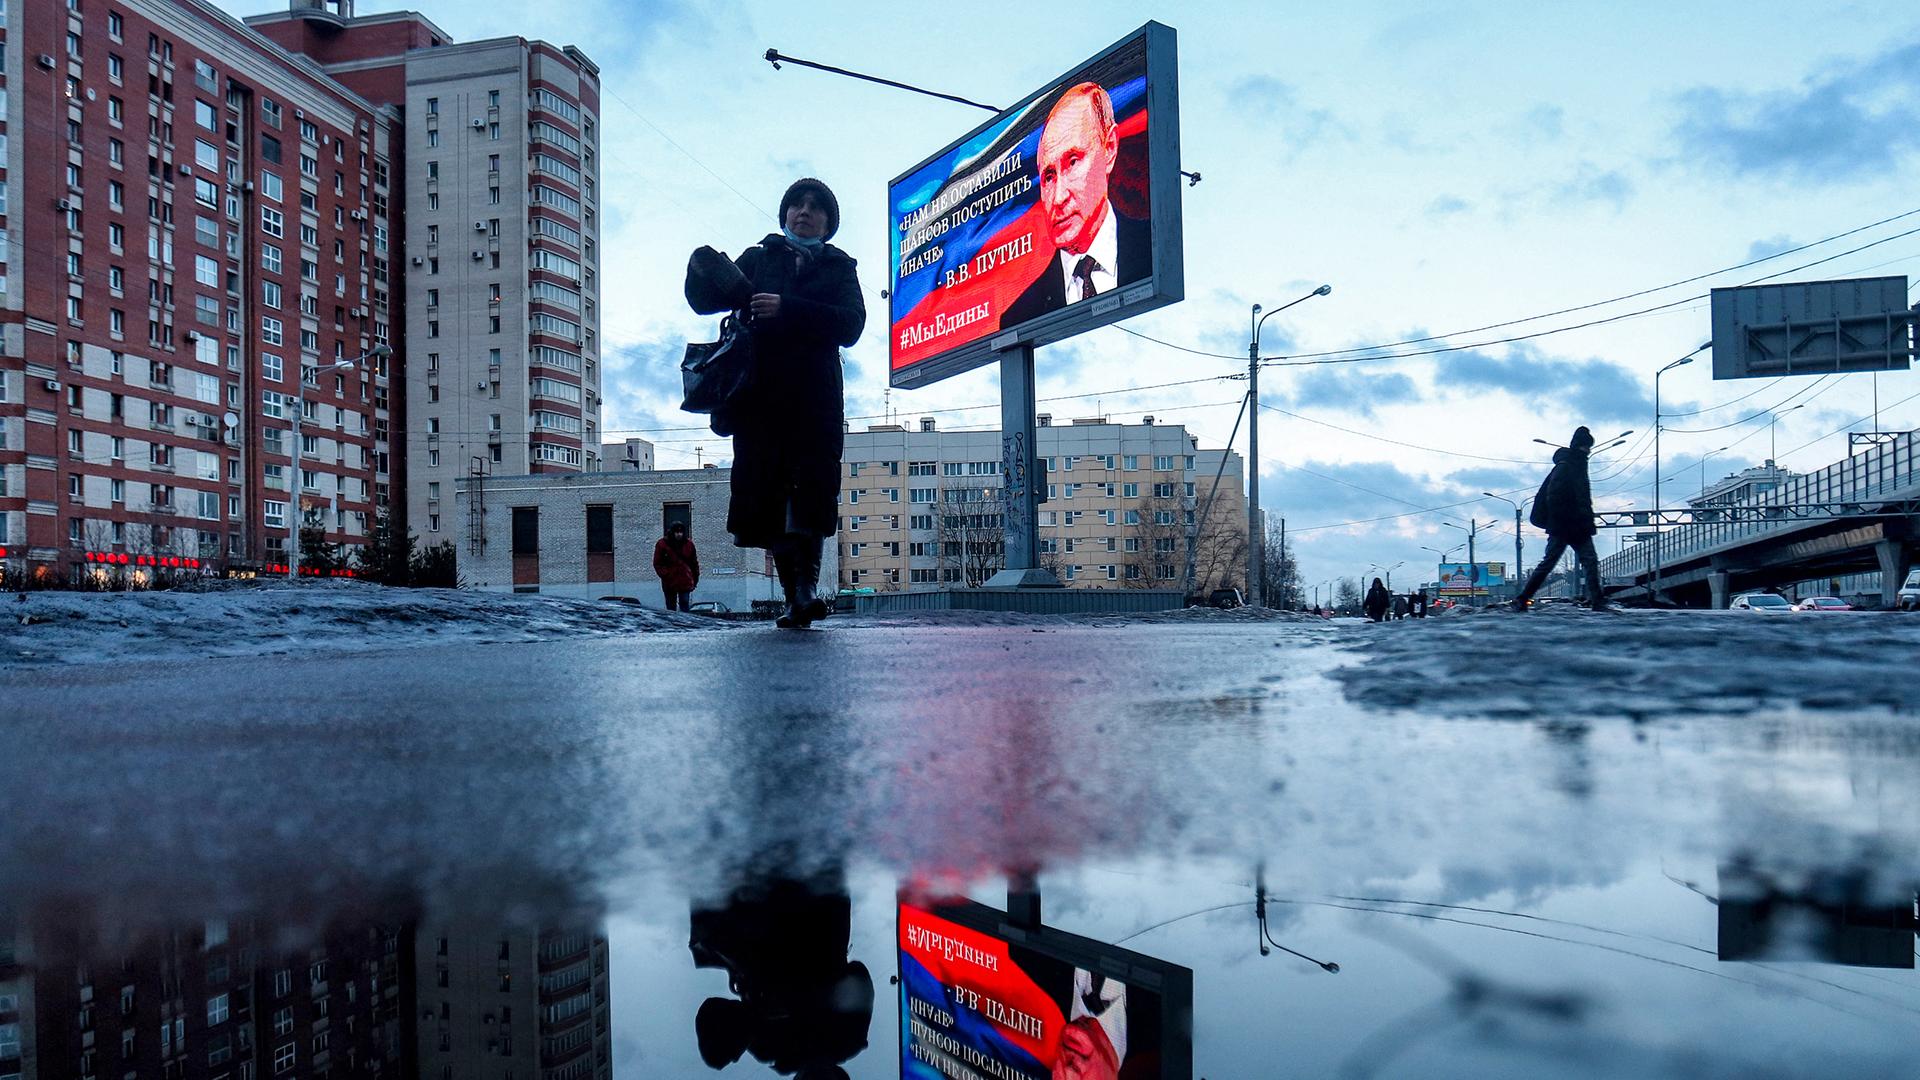 Fußgänger gehen an einer Werbetafel vorbei, auf der ein Bild des russischen Präsidenten Wladimir Putin und ein Zitat aus seiner jüngsten Rede an die Nation abgebildet sind: "Wir hatten keine andere Chance, als anders zu handeln".